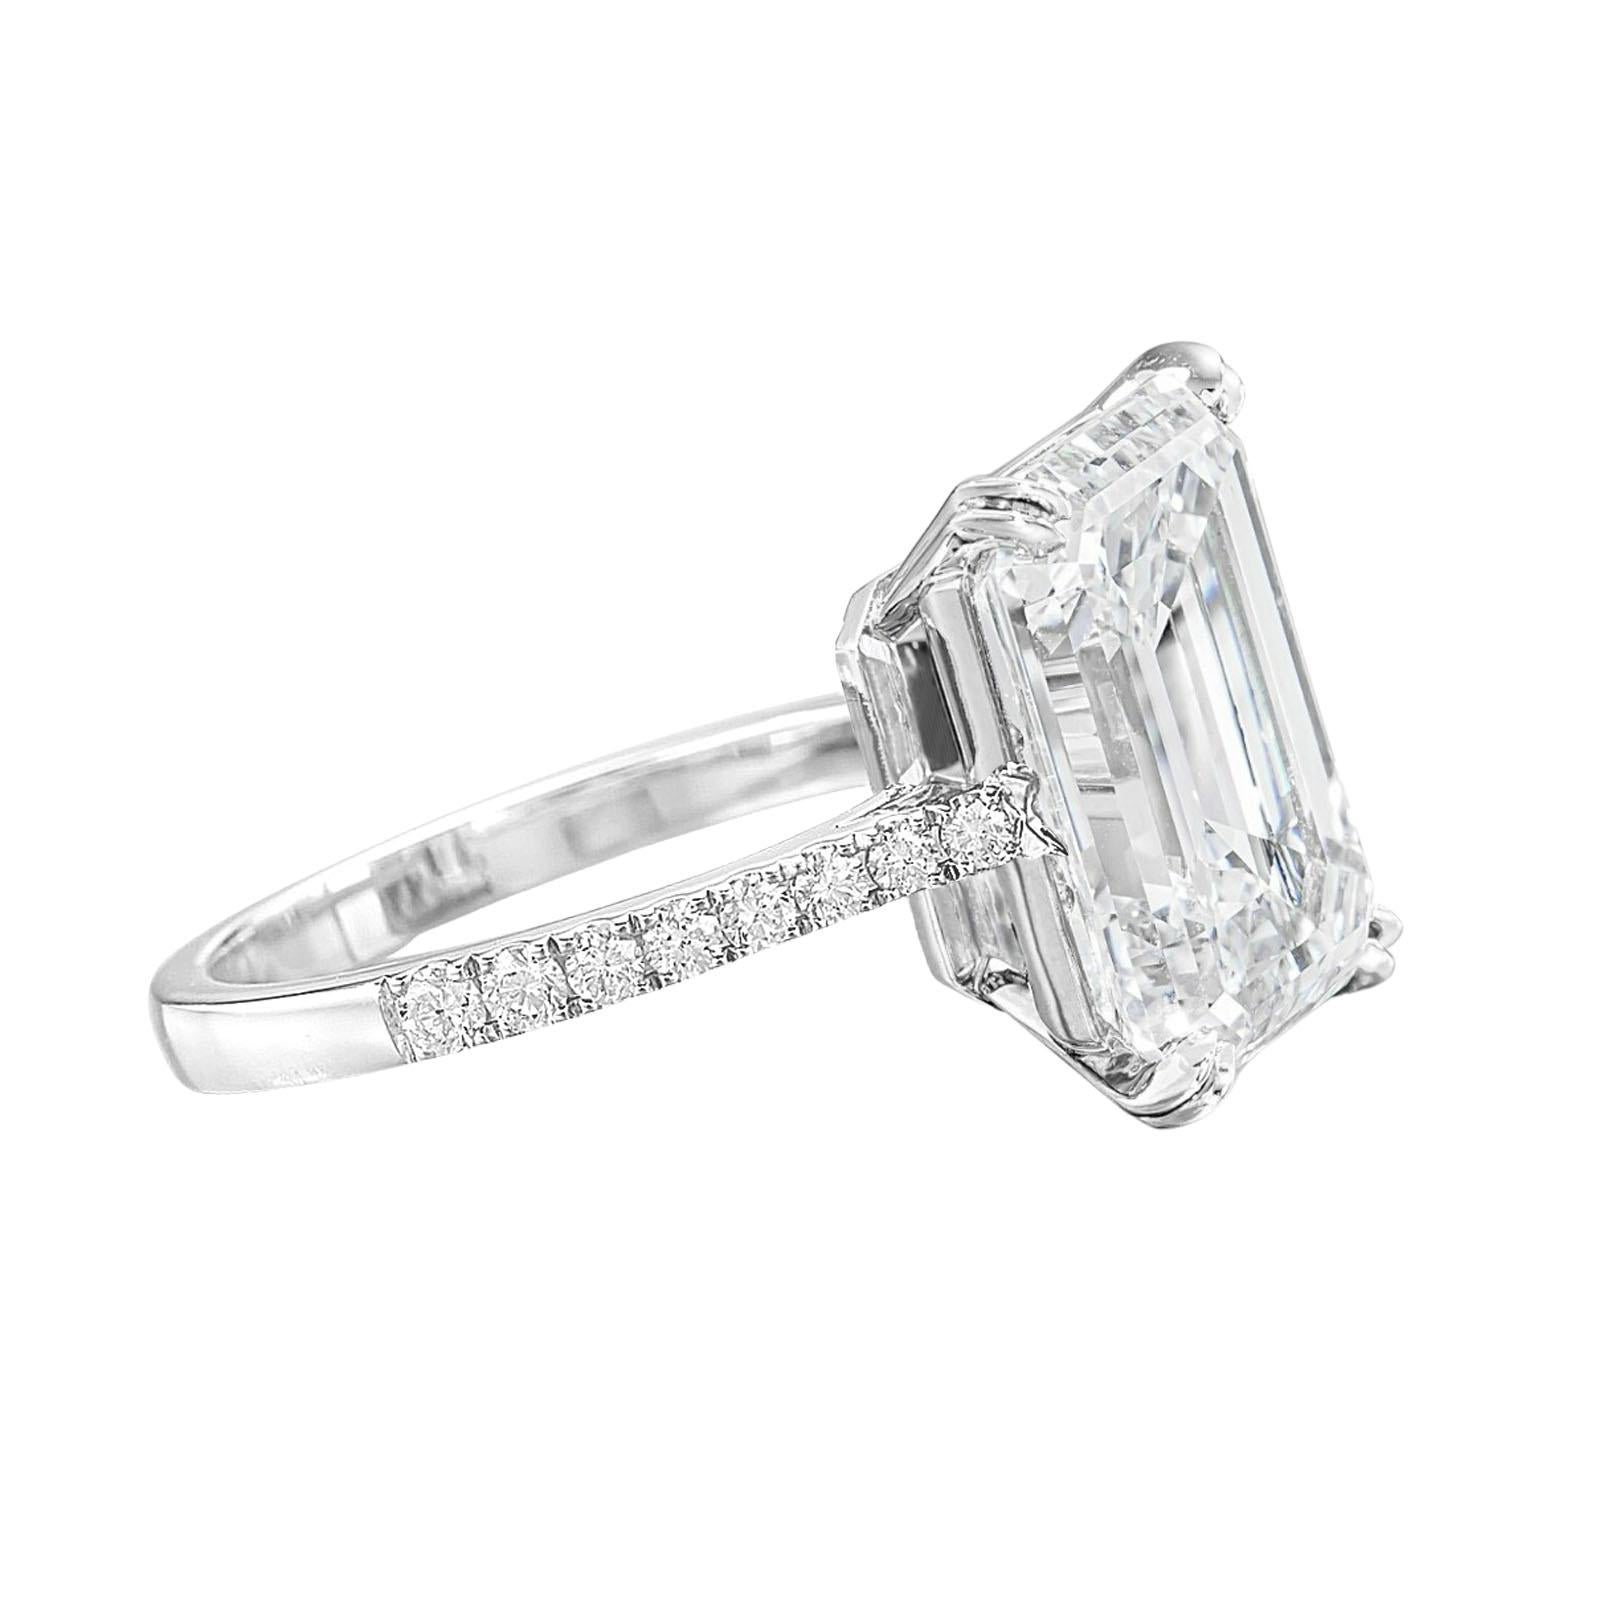 Un exquis diamant taille émeraude de 5 carats, de couleur D et de pureté irréprochable, certifié par la GIA.

Un diamant de qualité supérieure serti de diamants micropavés dans la bande. 

serti en platine massif
